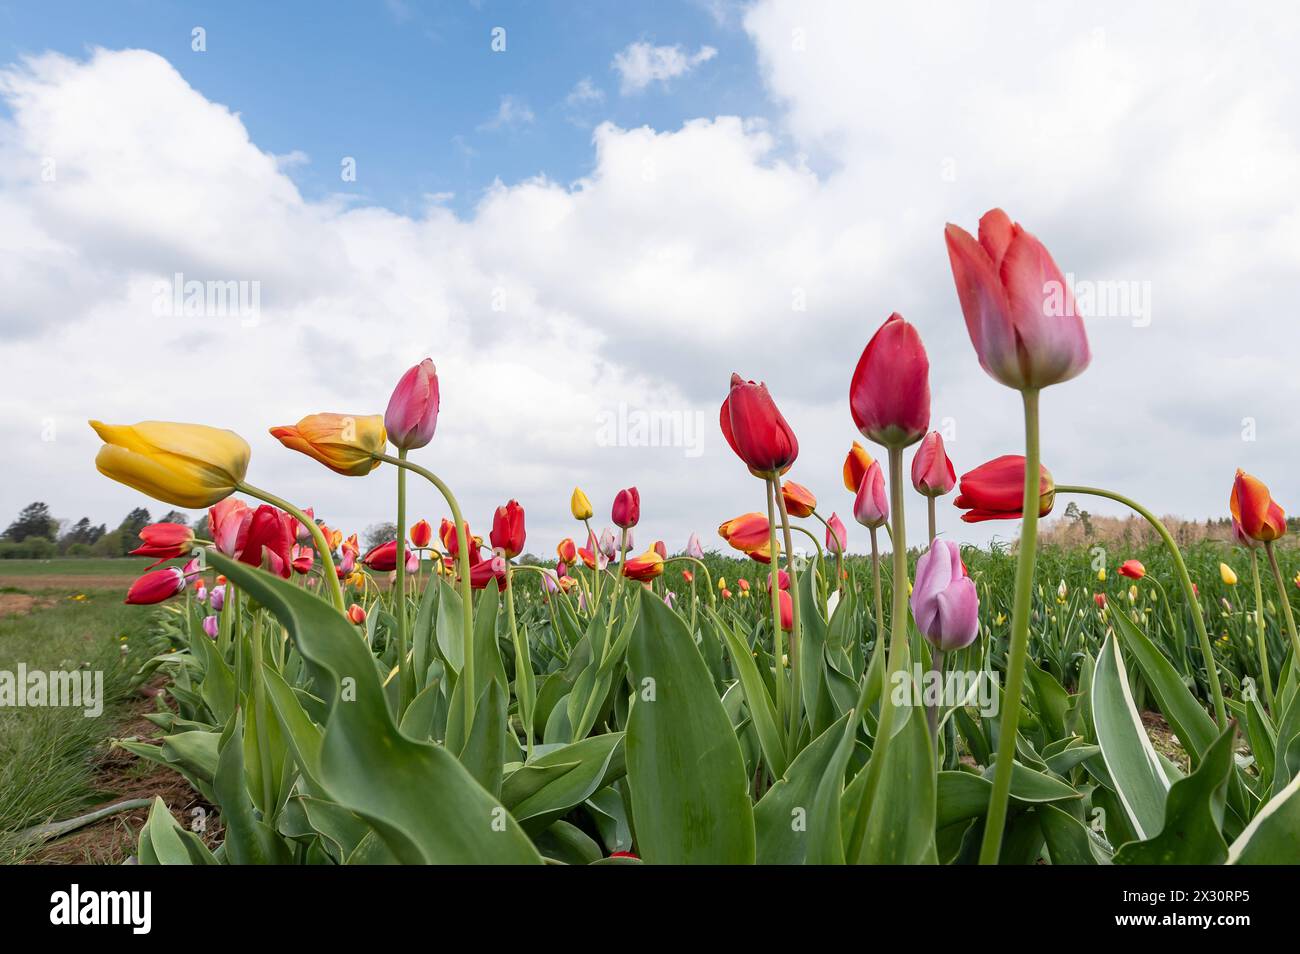 Tulpen blühen auf einem Feld zum selber schneiden. Rottweil Baden-Württemberg Deutschland *** tulipani in fiore in un campo per tagliarsi Rottweil Baden Württemberg Germania Foto Stock